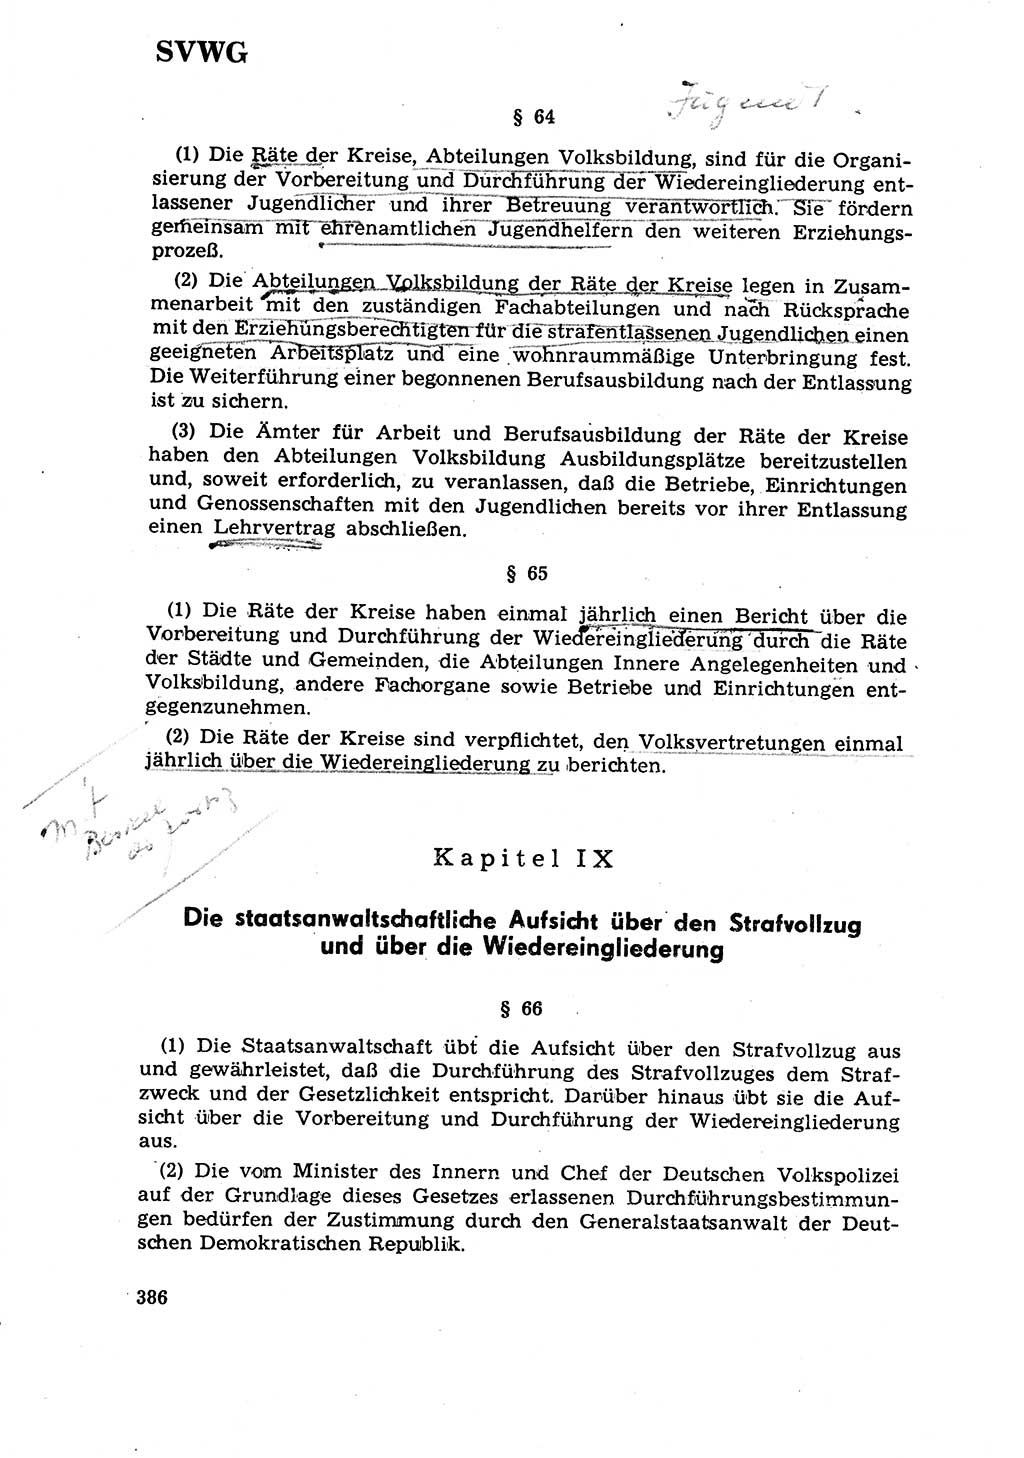 Strafrecht [Deutsche Demokratische Republik (DDR)] 1968, Seite 386 (Strafr. DDR 1968, S. 386)